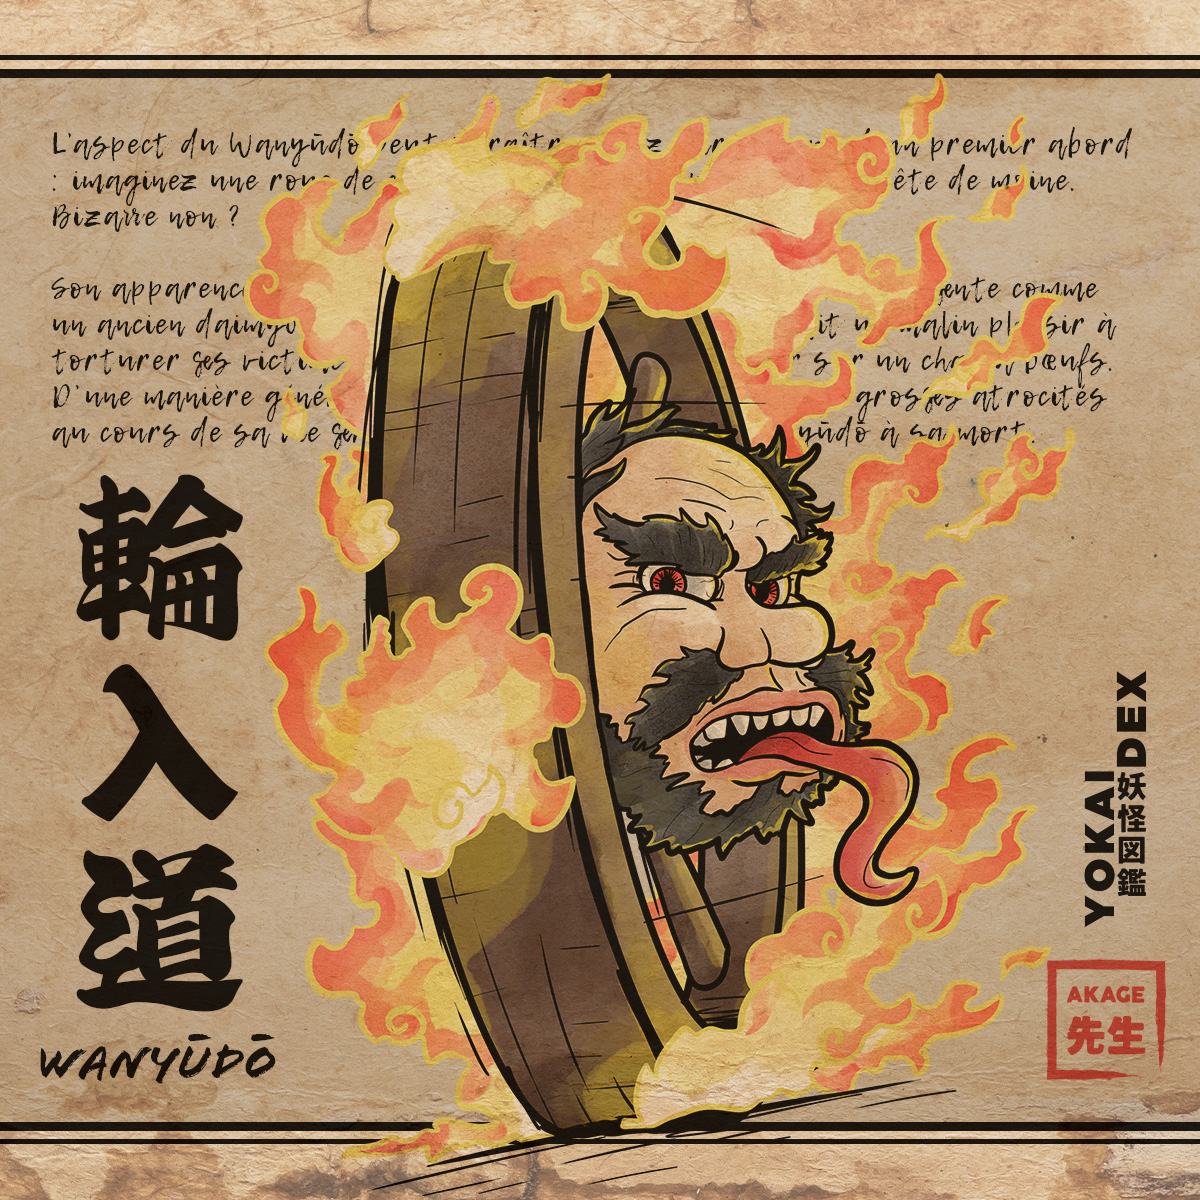 Livre Yokaidex famille esprit vengeur onryo fantôme japonais wanyudo roue feu moine